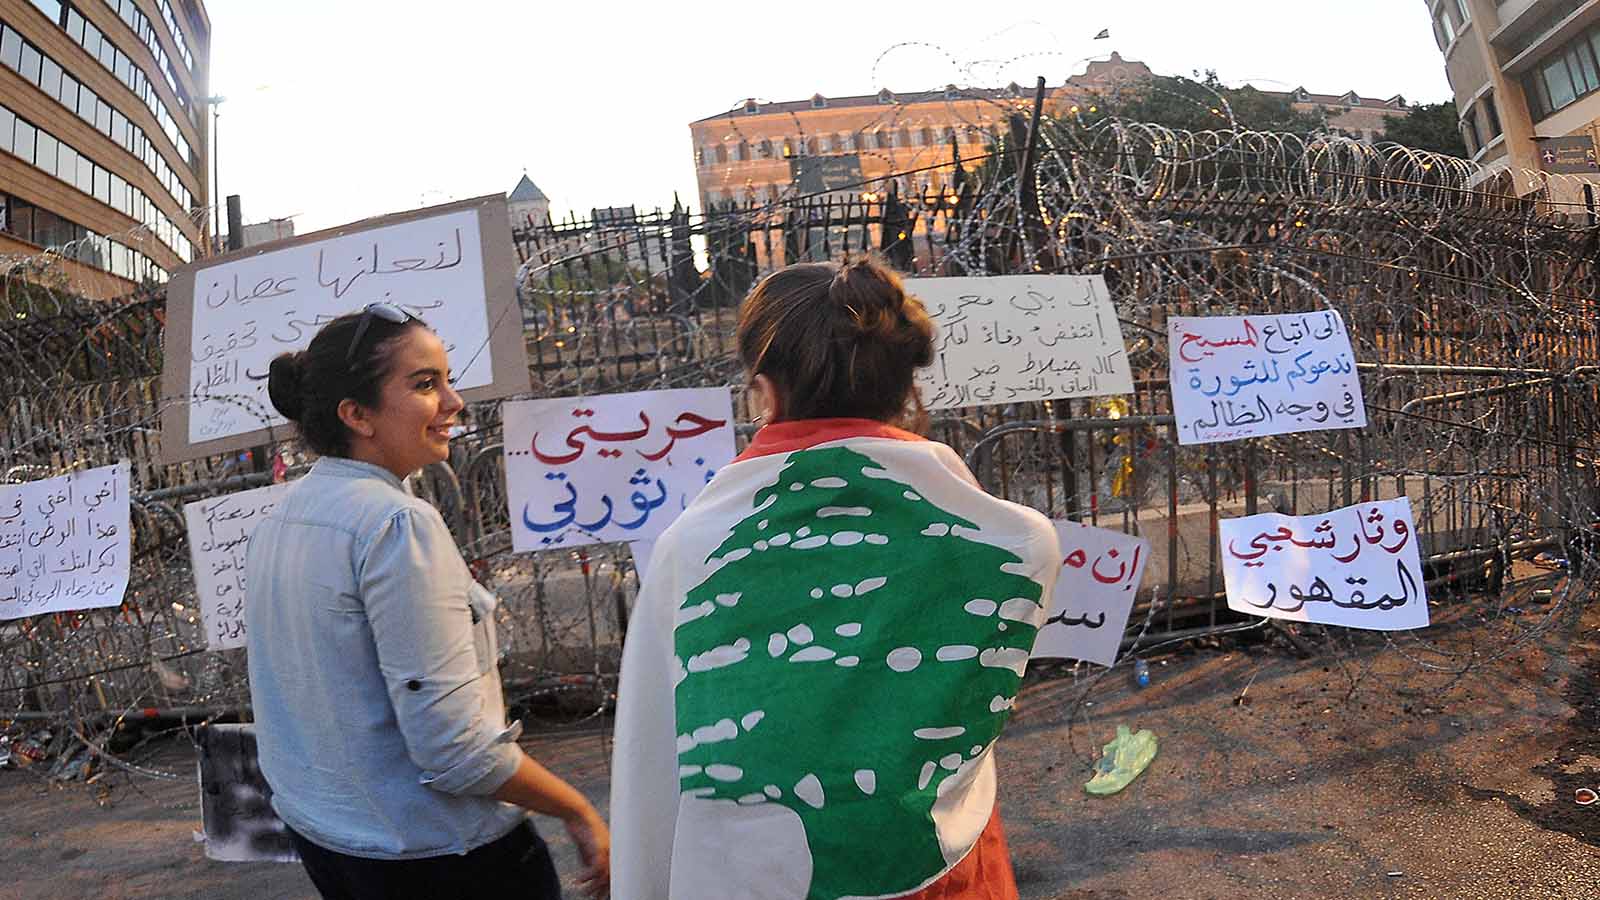 اعتصام "بدنا نحاسب" في رياض الصلح (محمود الطويل)